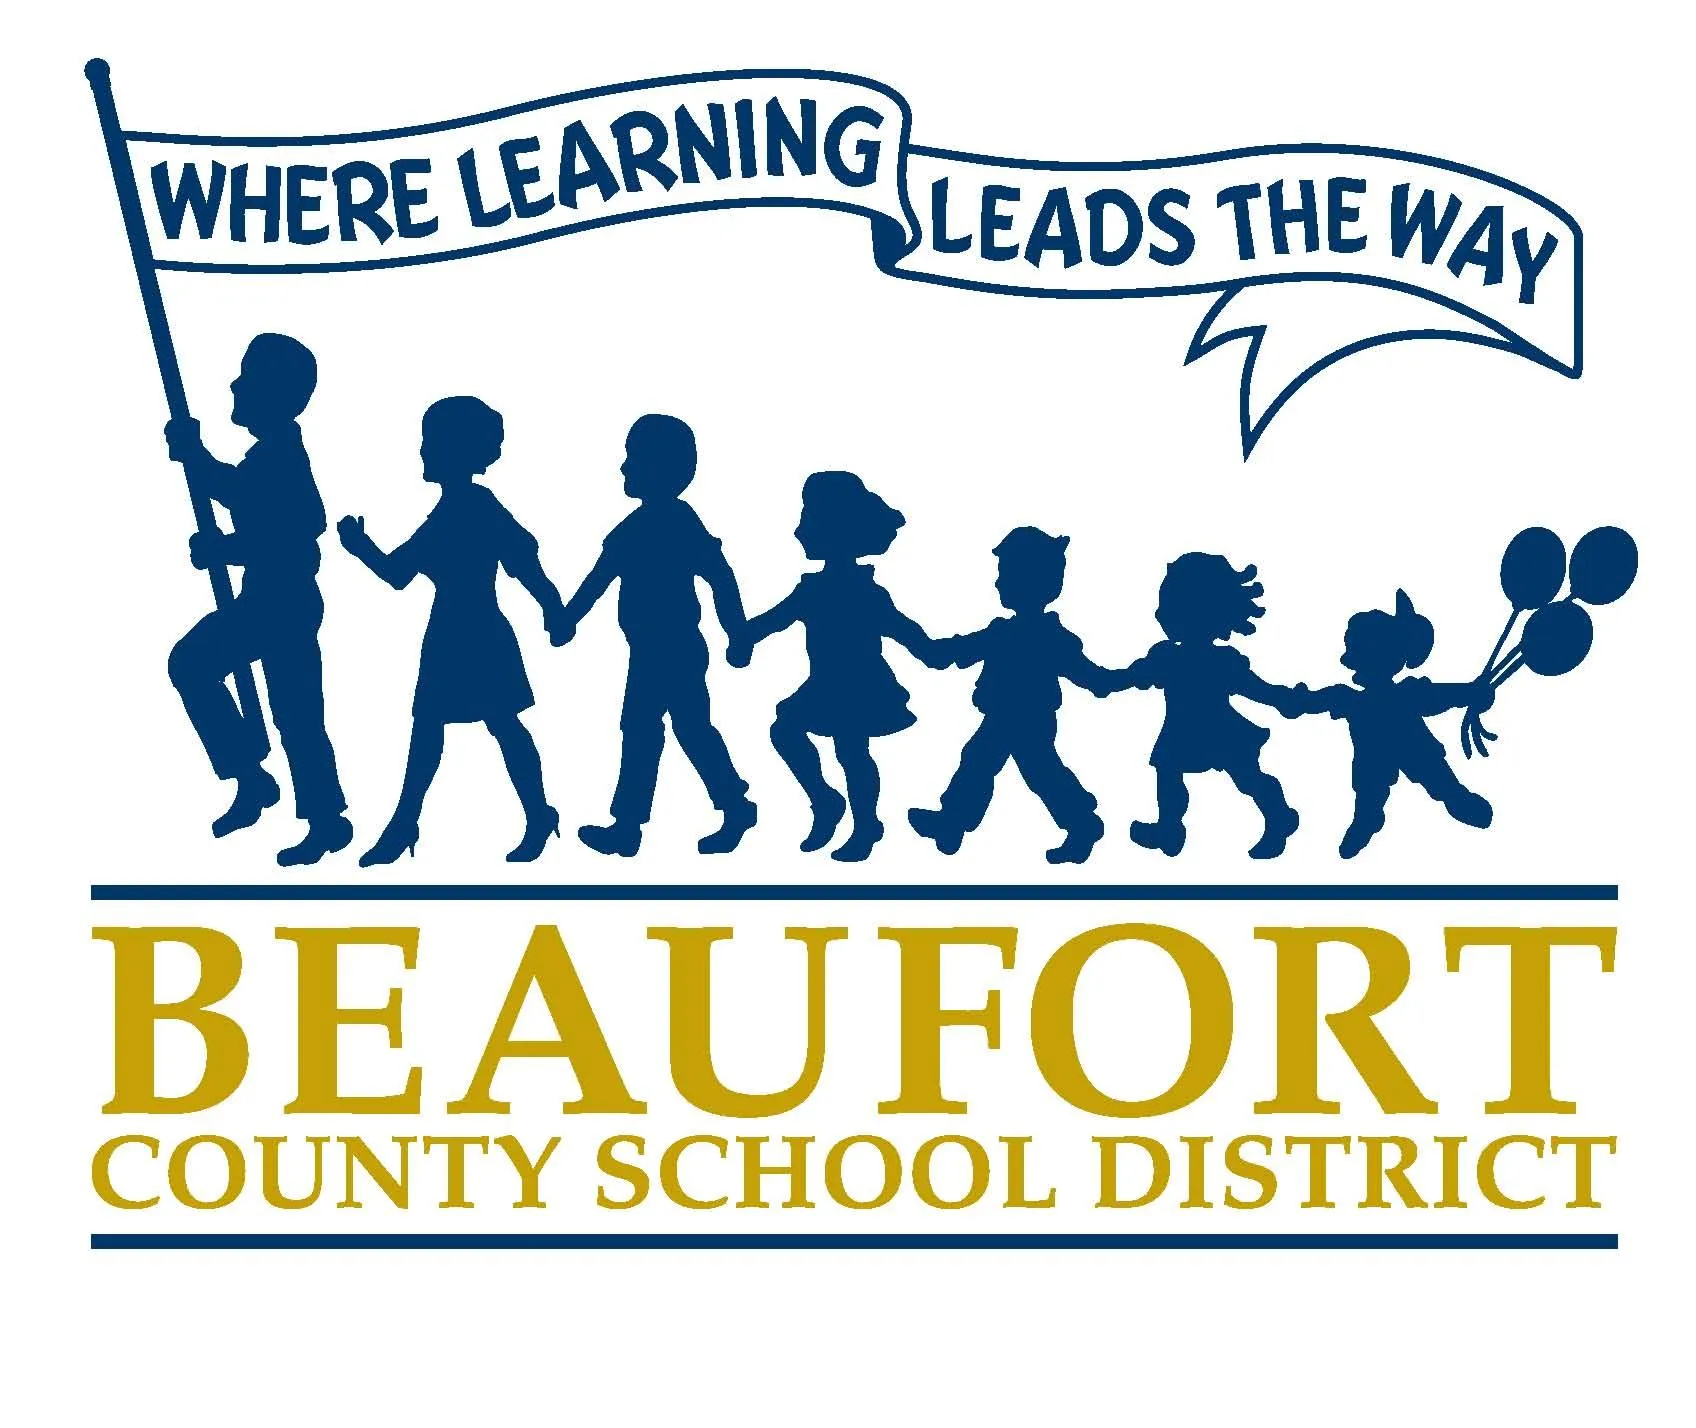 Beaufort County Schools Calendar 2024